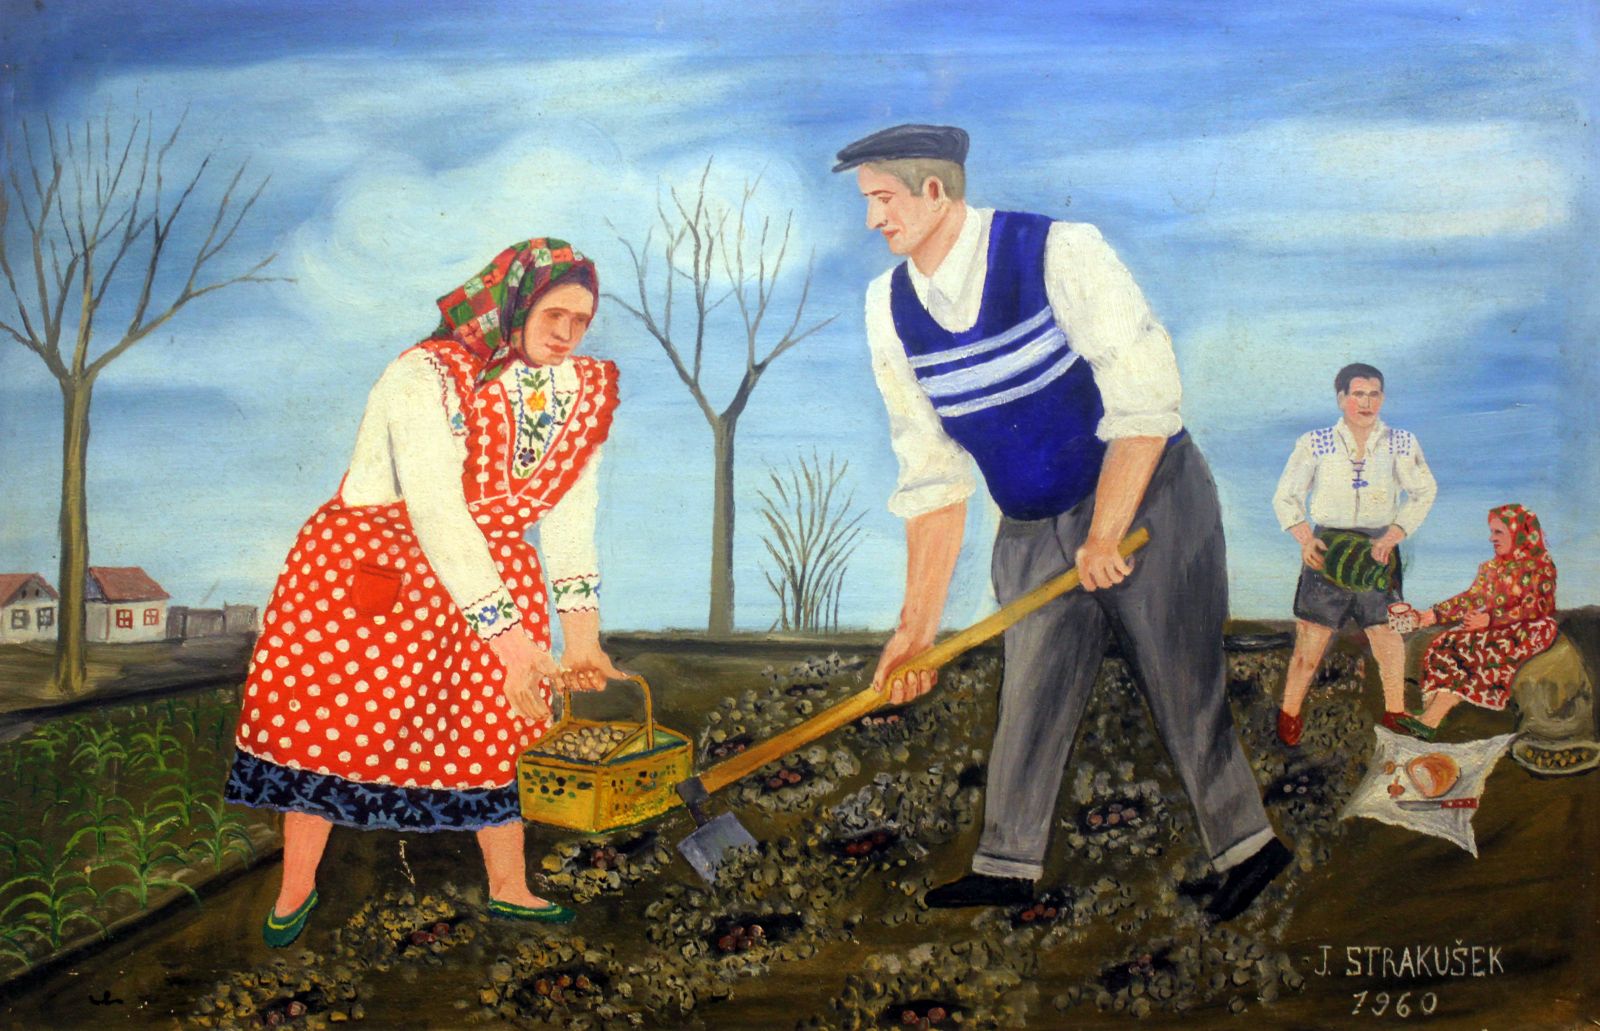 Jan Strakusek, Sadjenje krompira, 53x80,1960.jpg